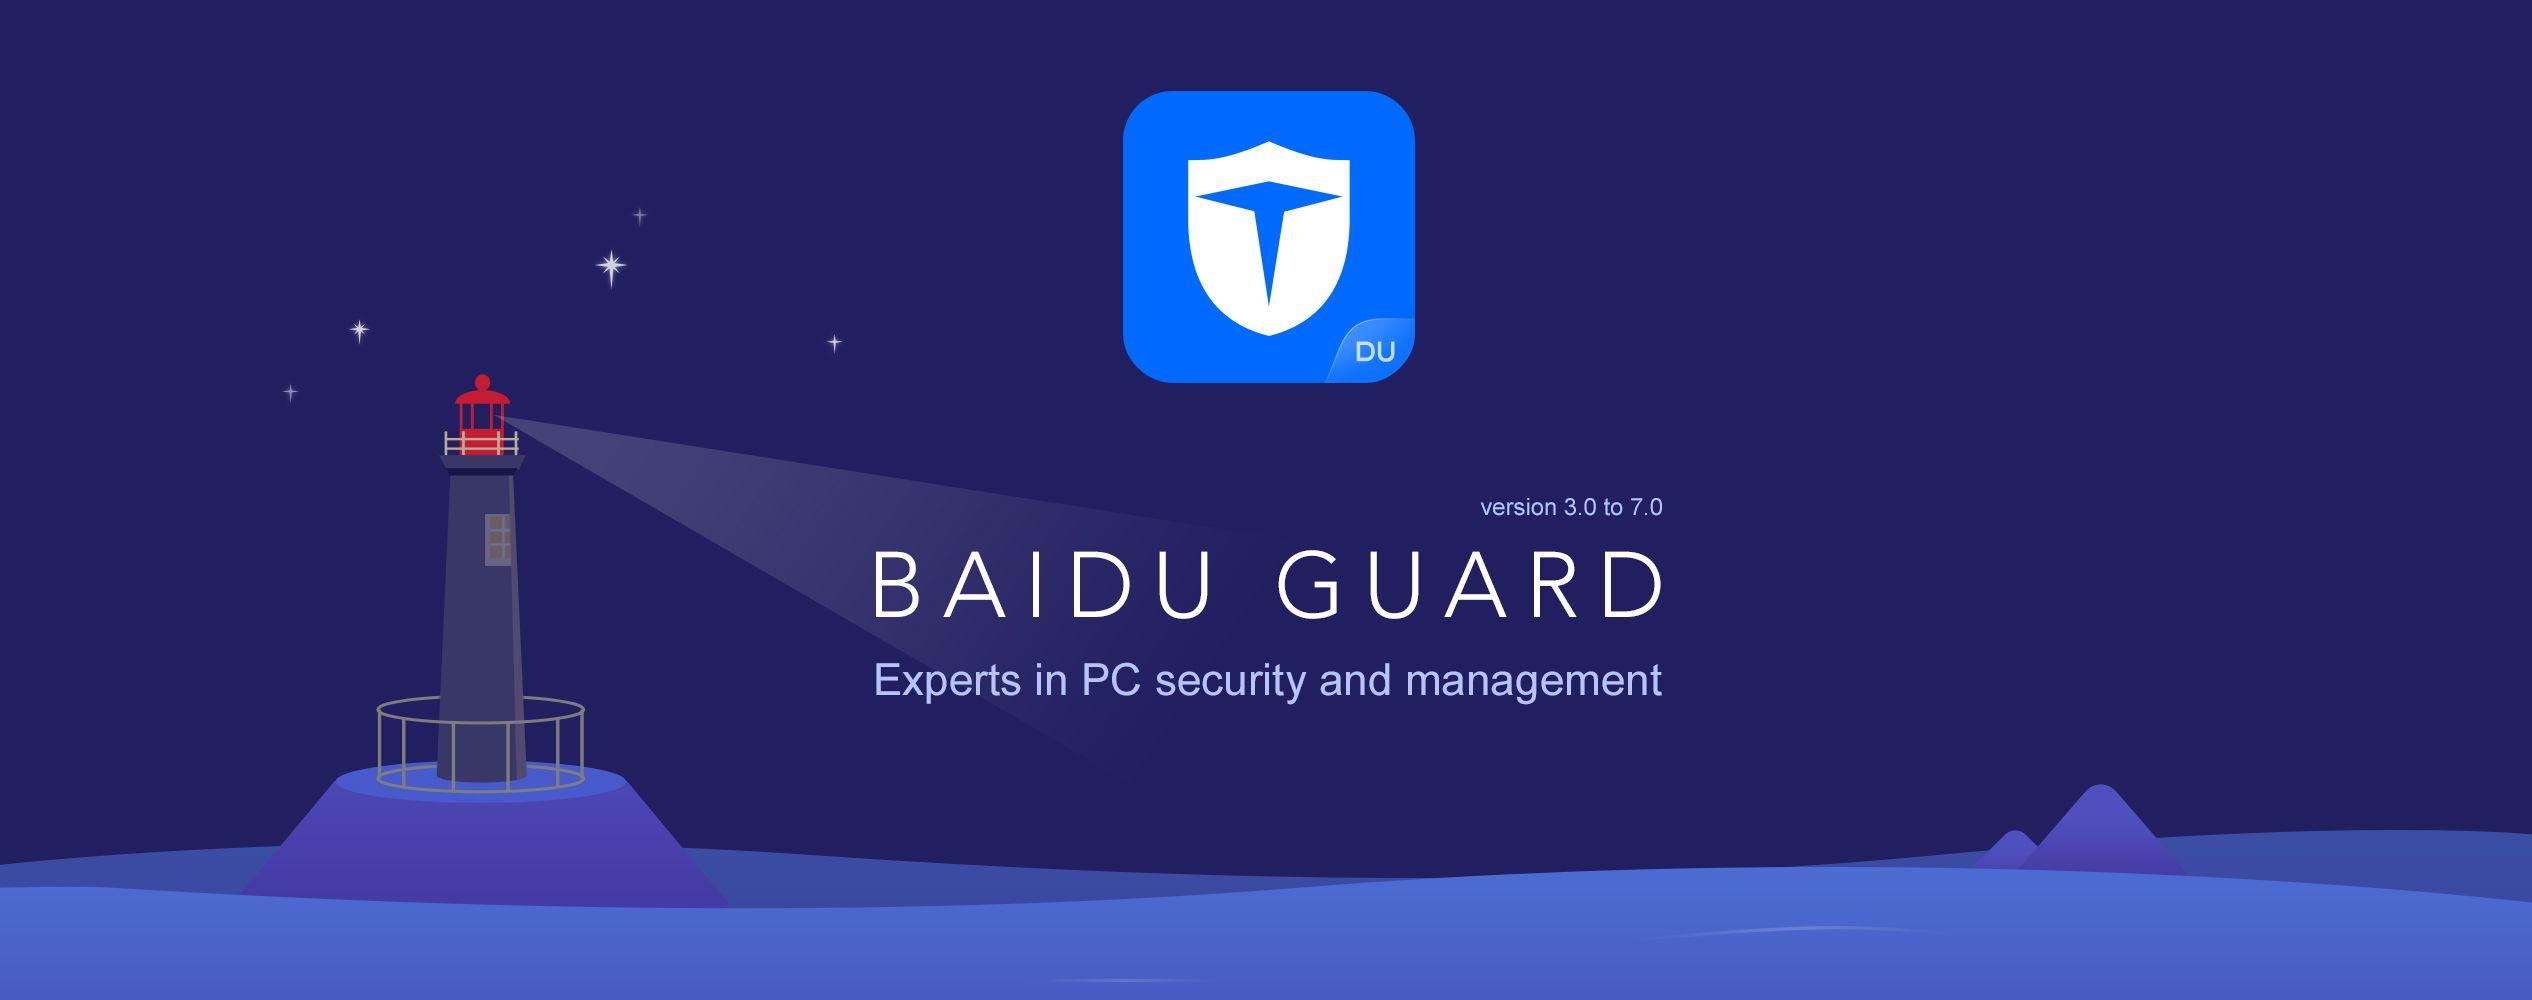 Baidu App Logo - Ran Tian – Baidu Guard